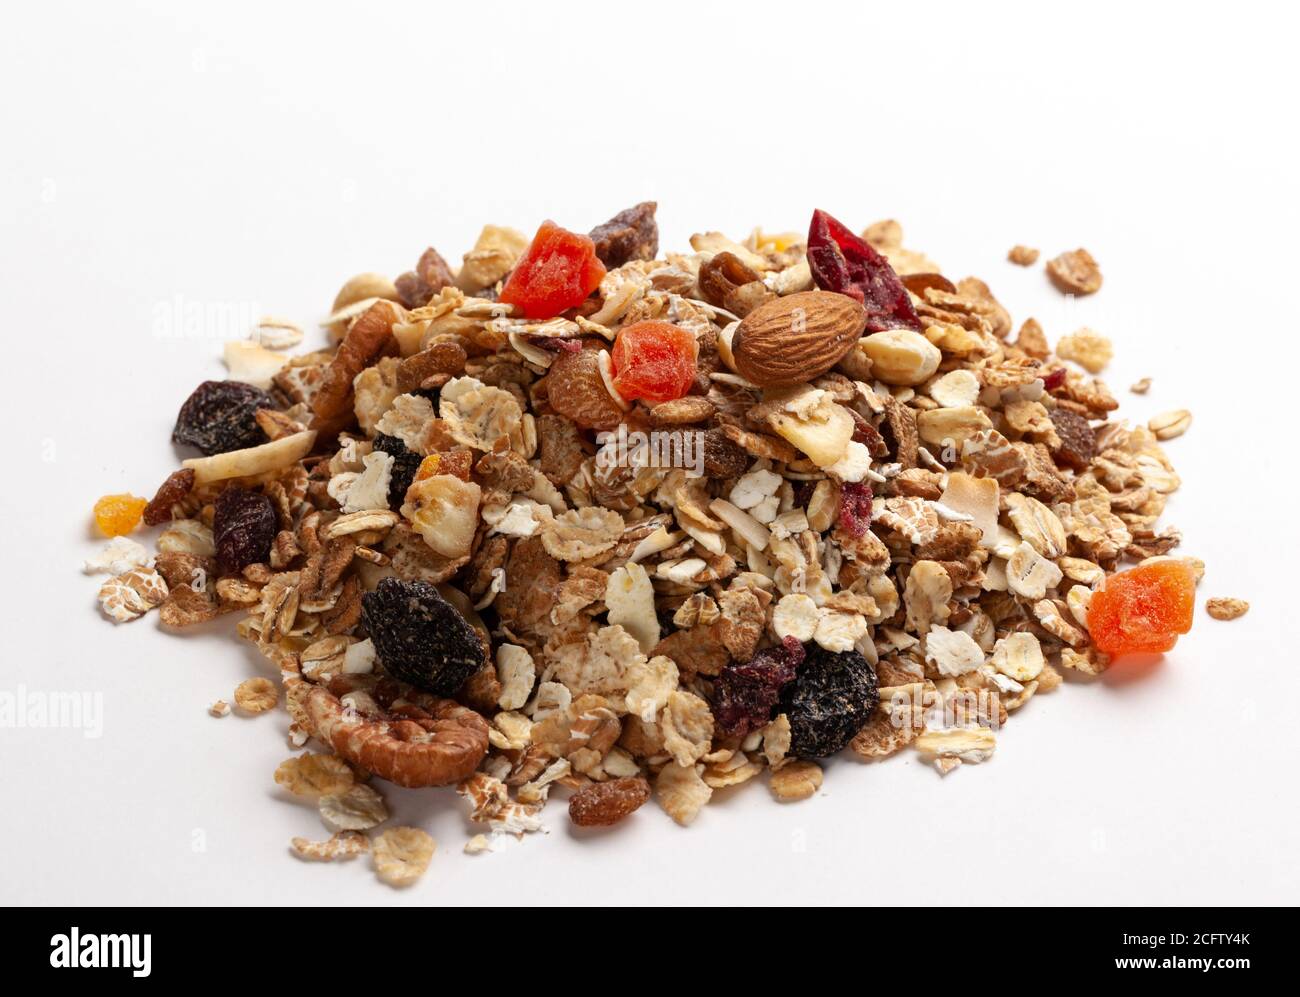 muesli breakfast cereal Stock Photo